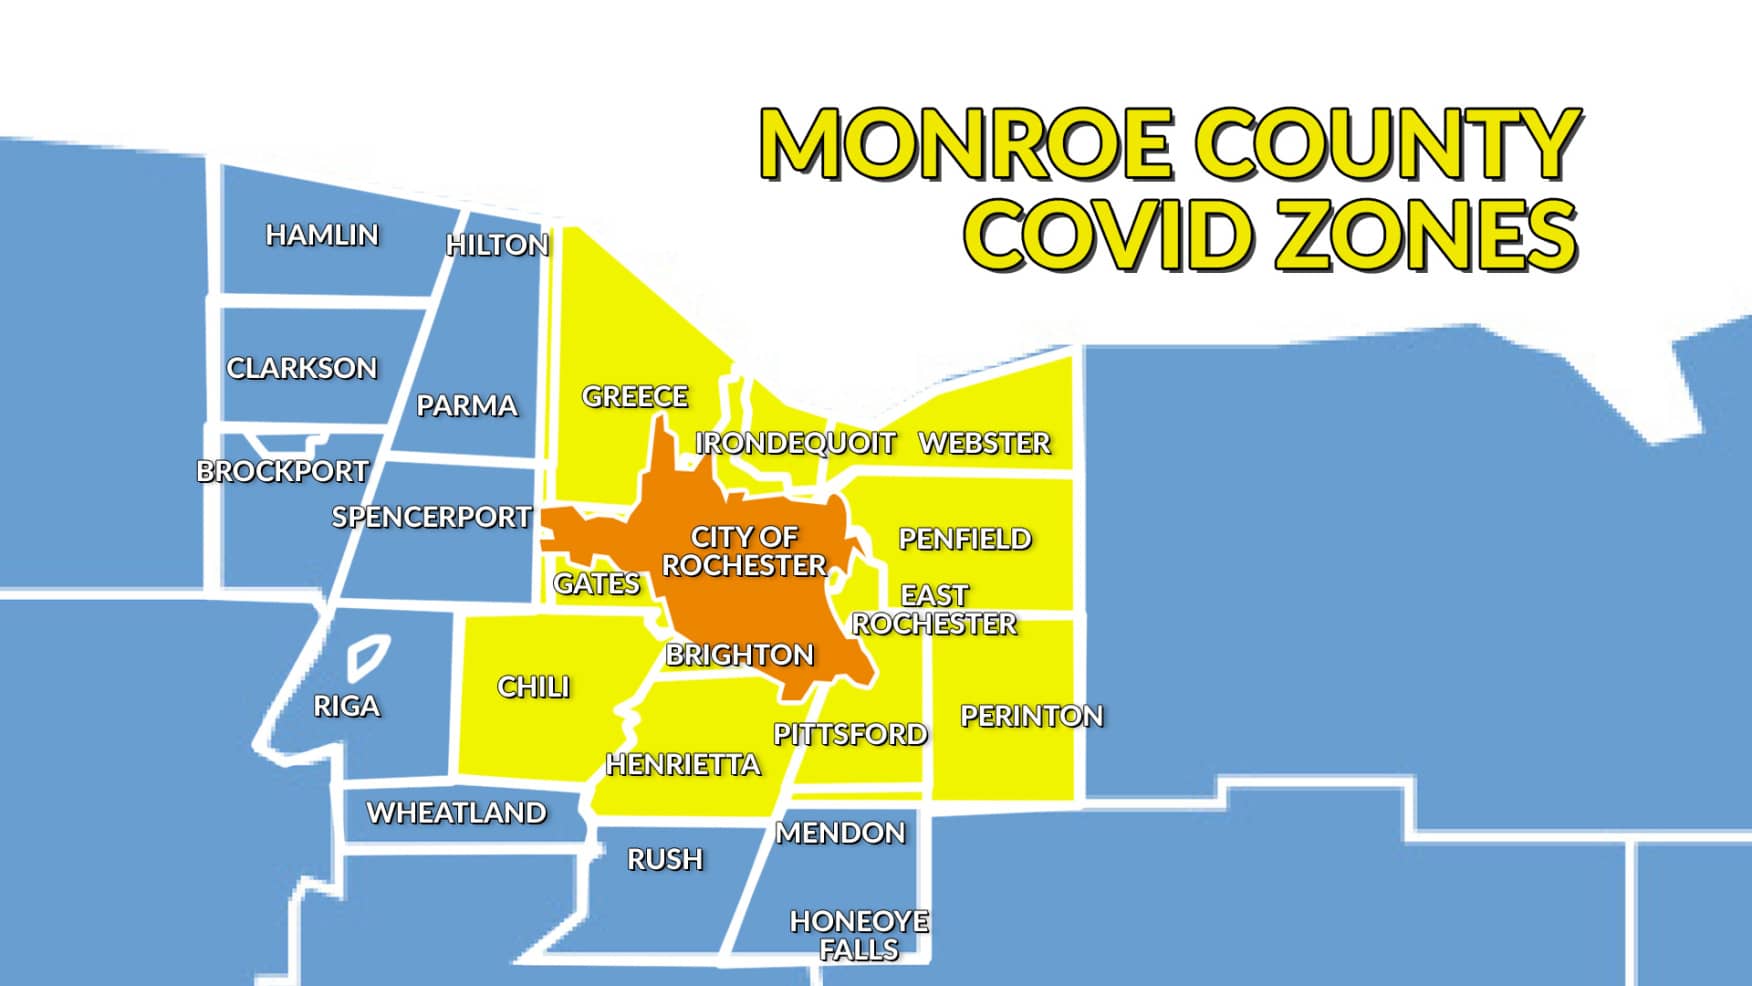 monroecovidzonemap-yellowupdate143760